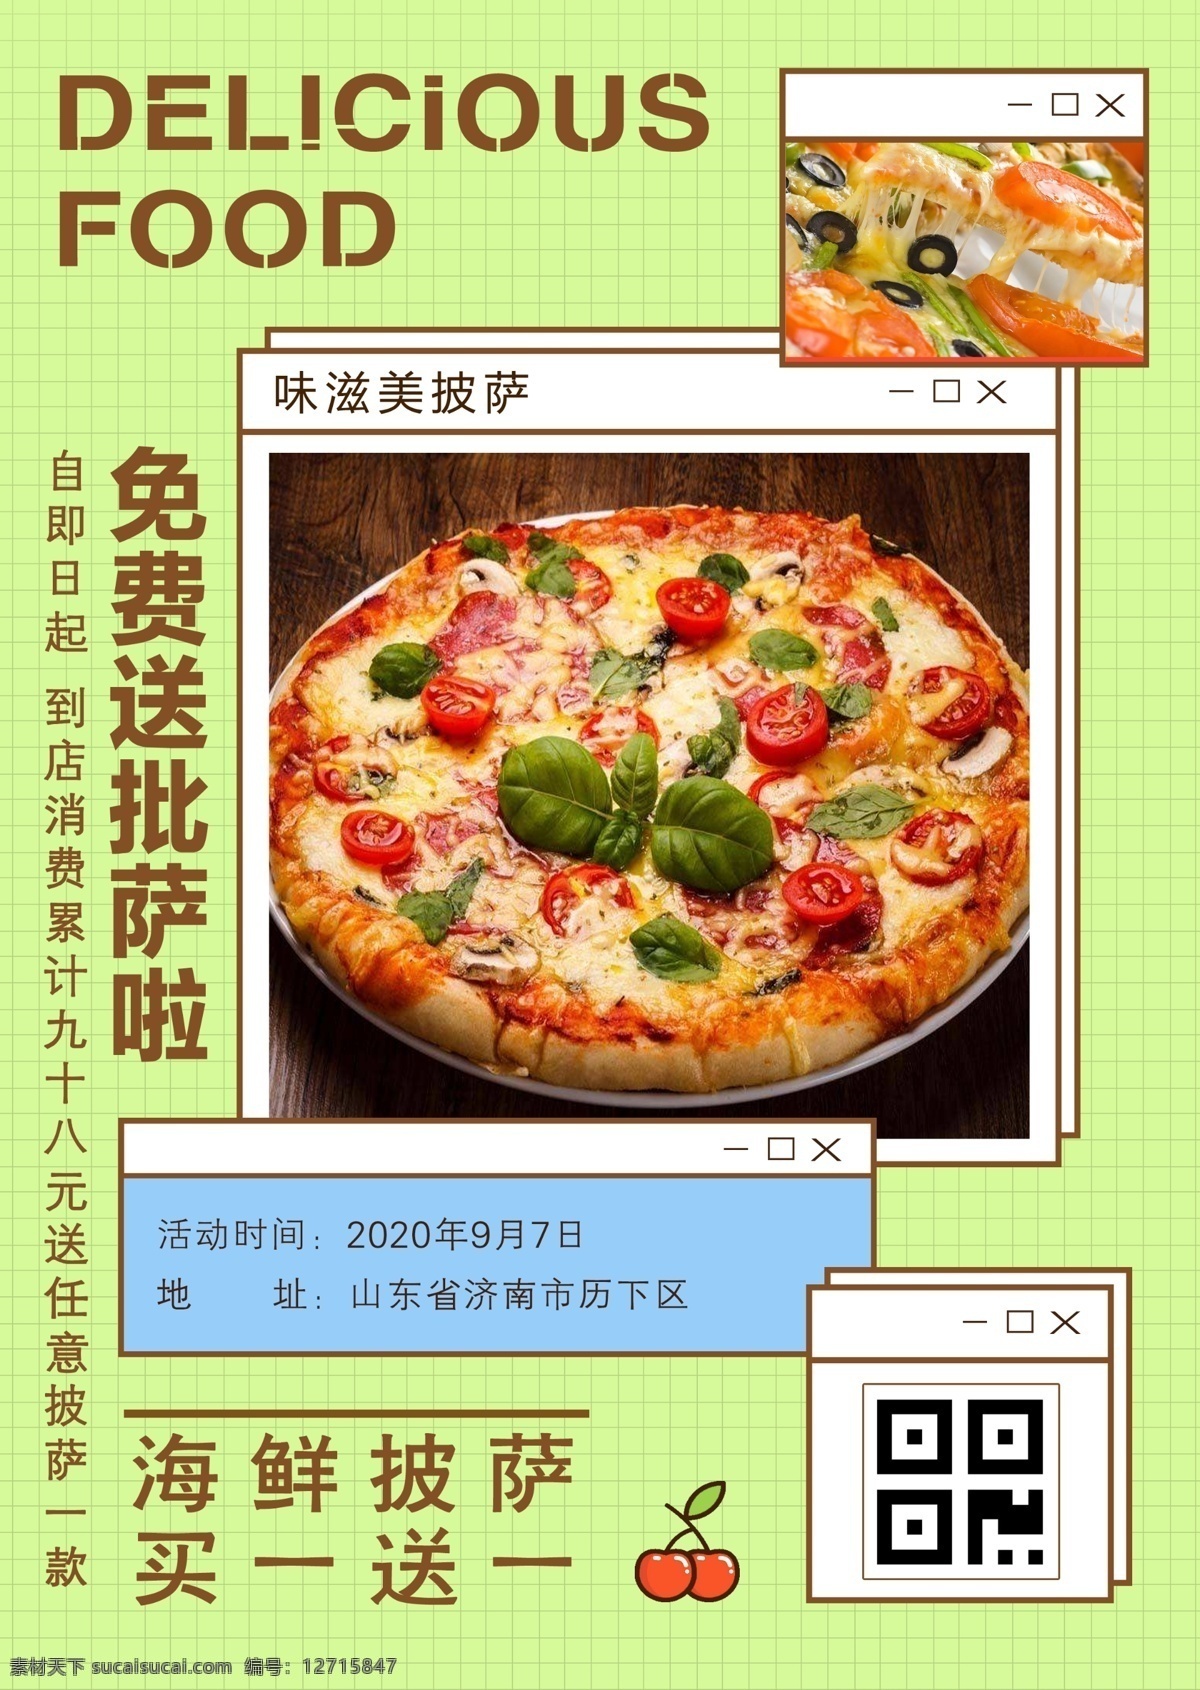 披萨海报图片 美食海报 披萨 寿司 汉堡 活动 海鲜披萨 排版临摹